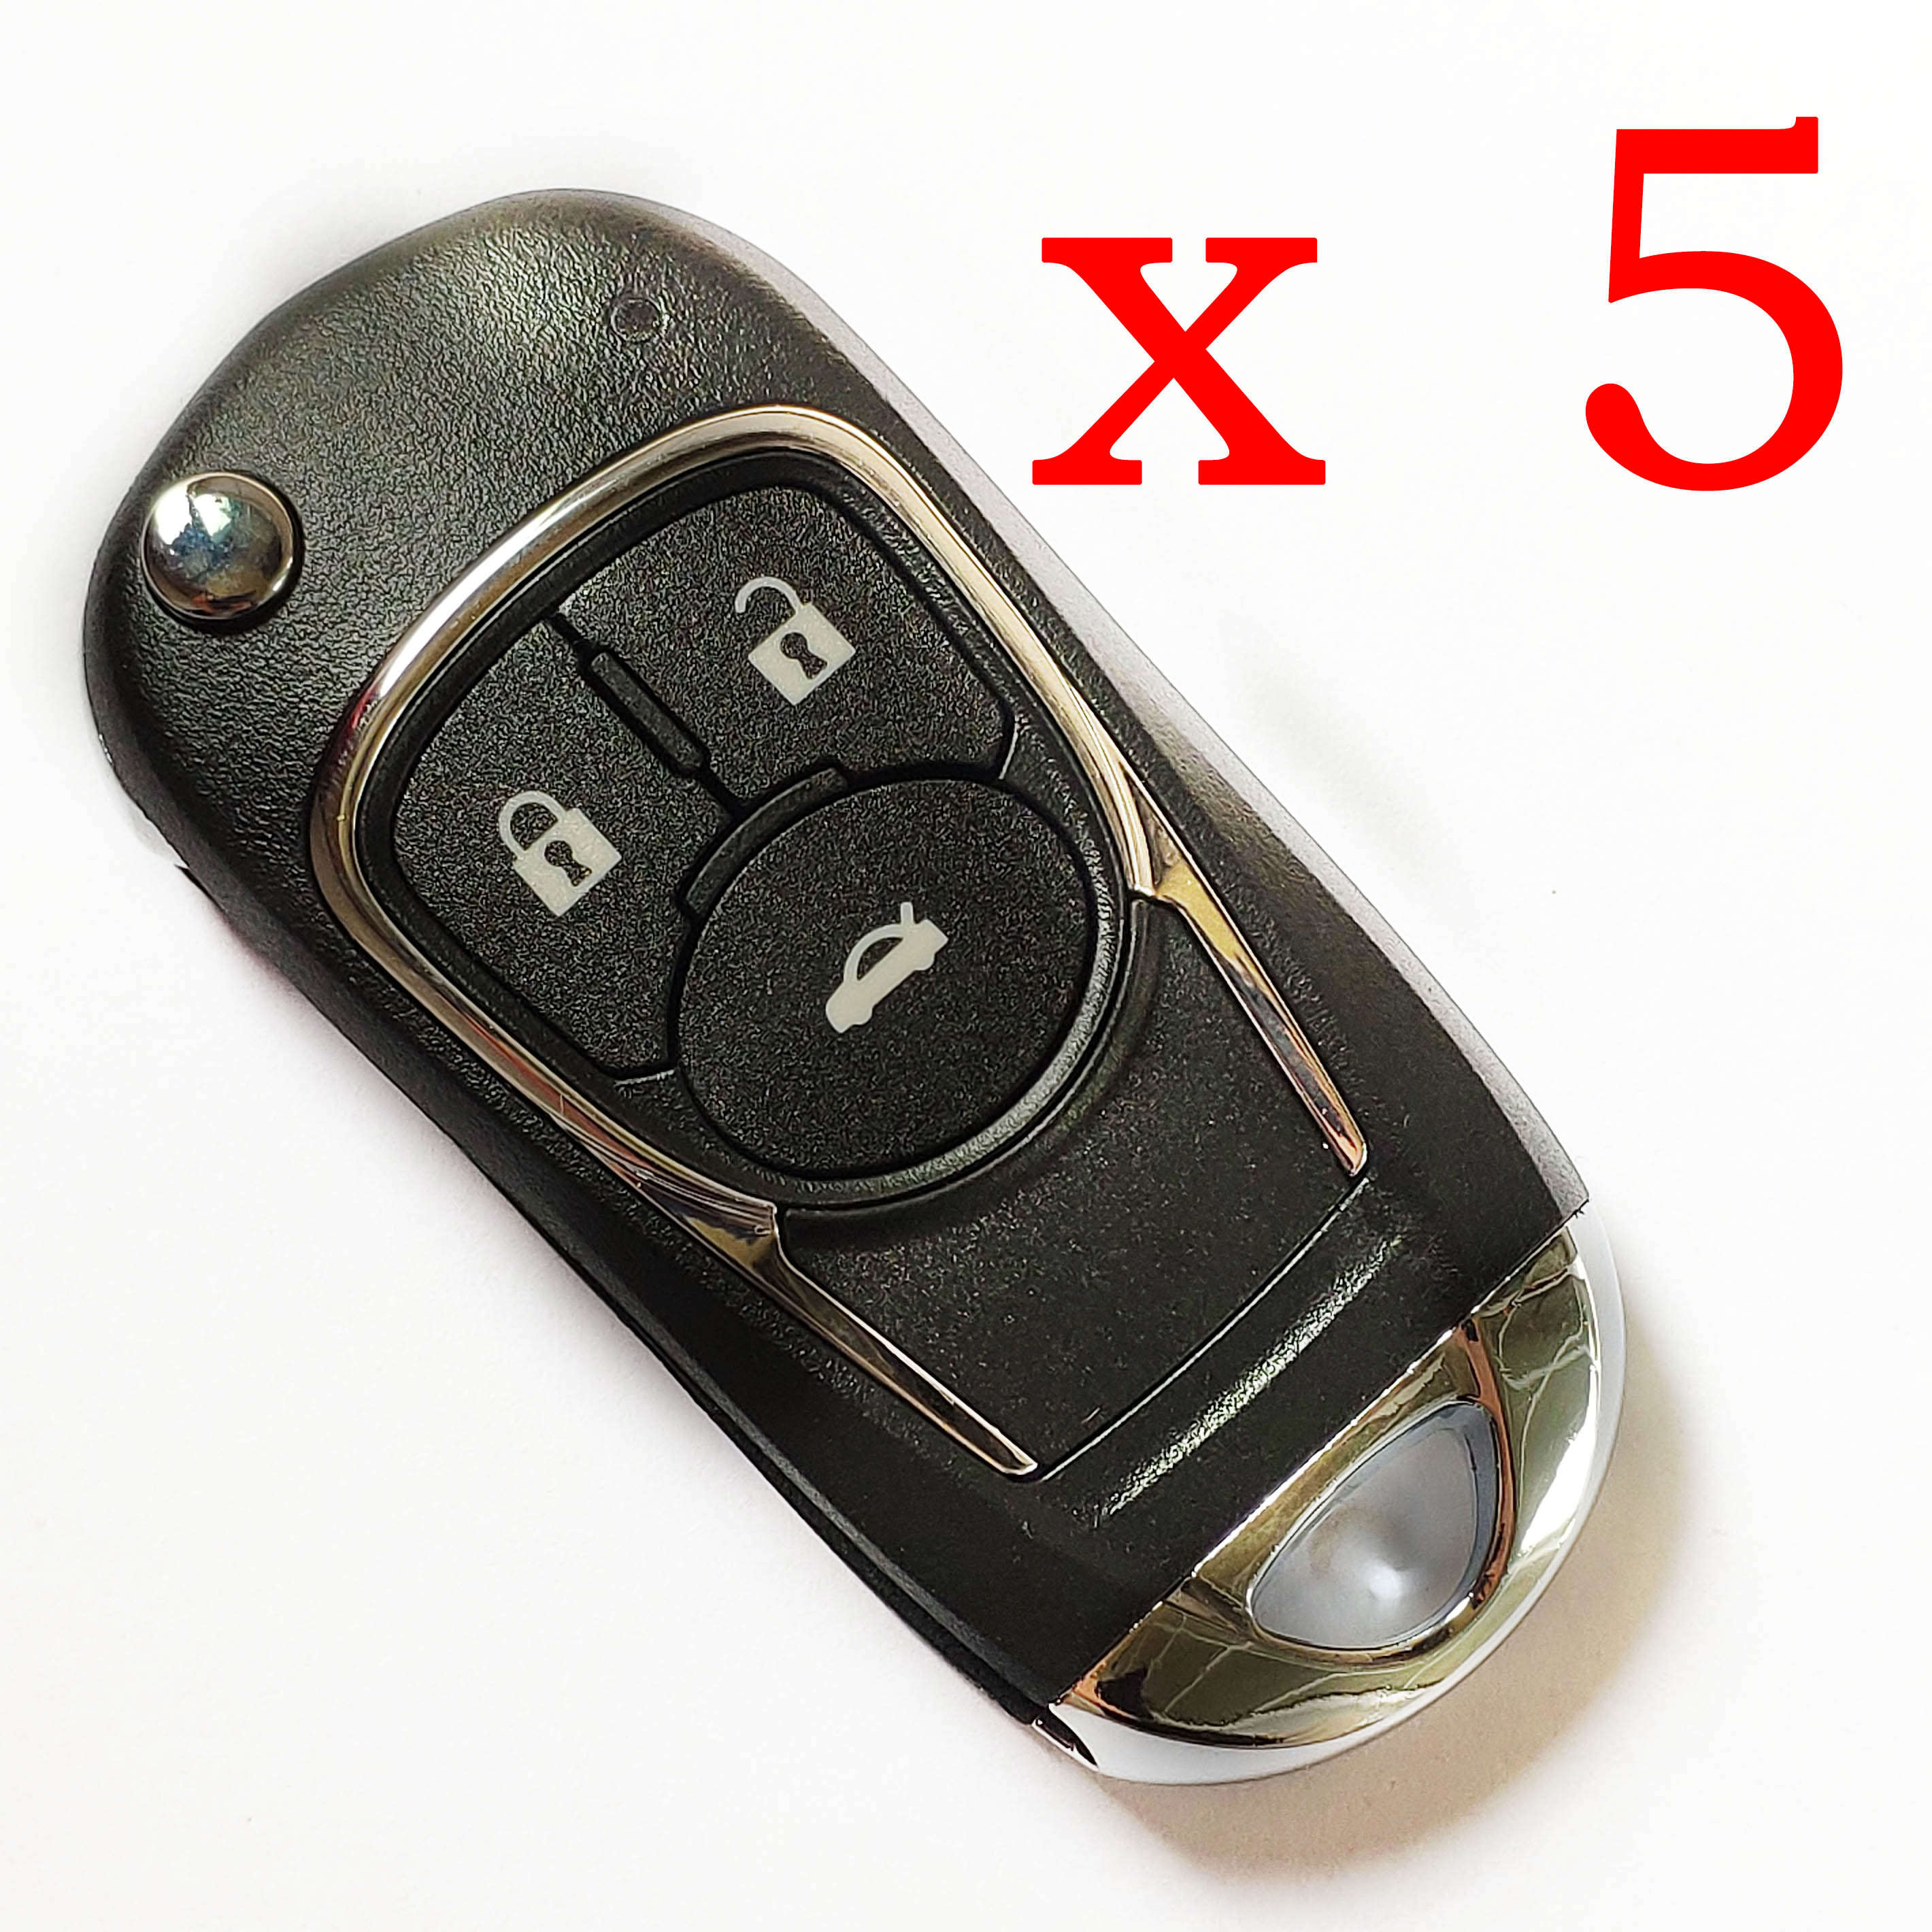 5 pieces Xhorse VVDI GM Universal Remote Control - XKBU03EN